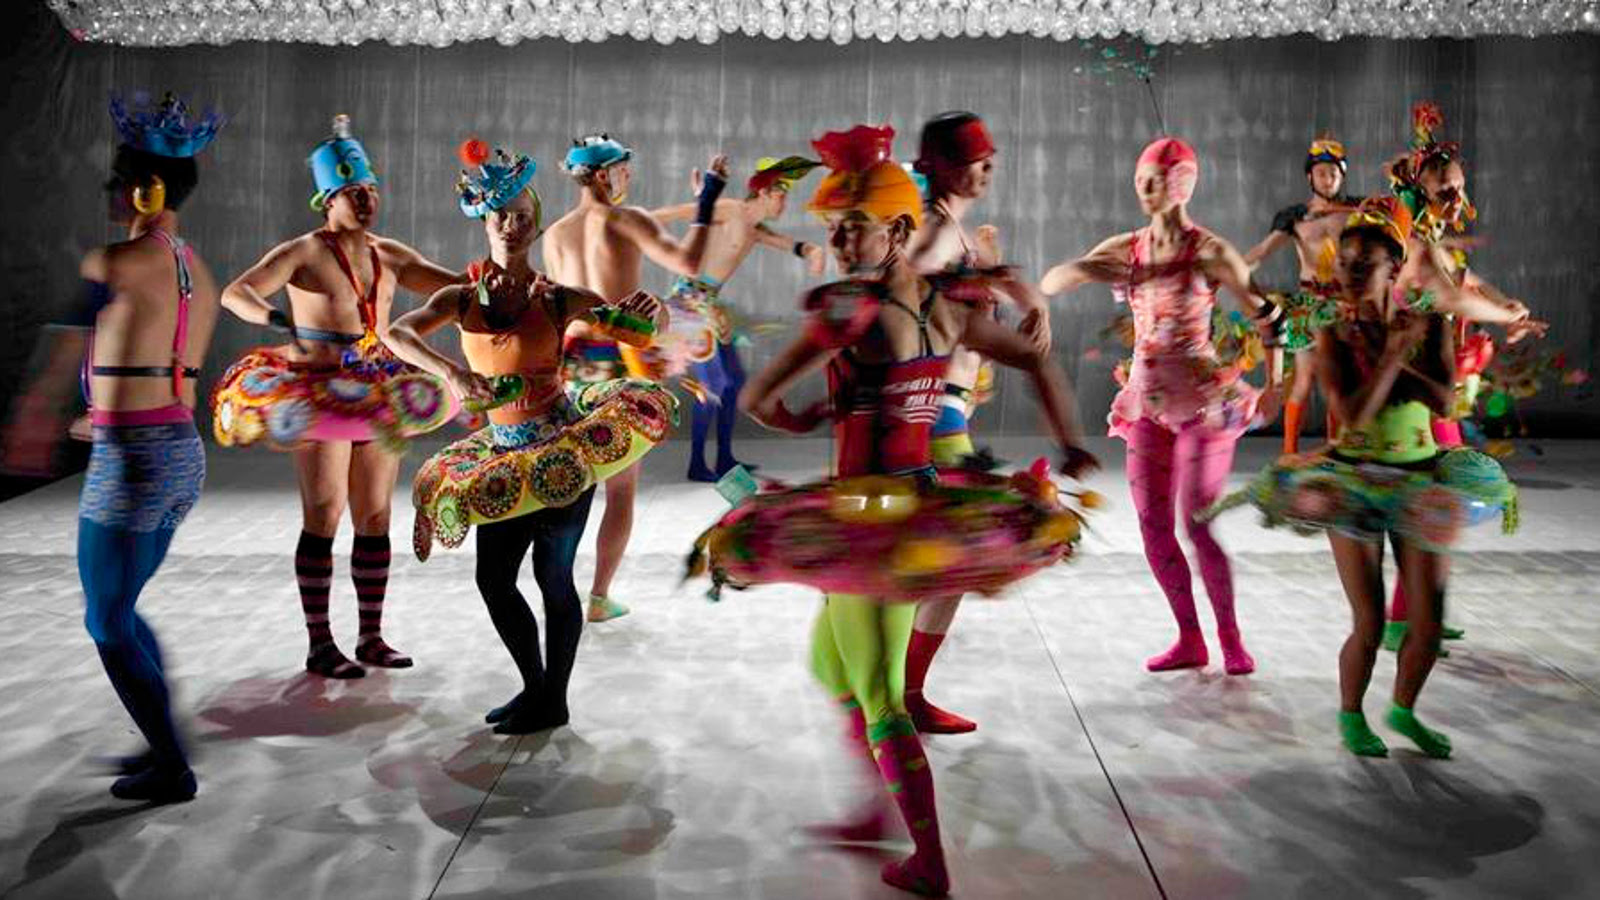 Kuvassa on balettitanssijoita värikkäissä ja erilaisissa asuissa, useimmat klassisen balettiasun tyyppisessä kirjavassa asussa lavalla tanssimassa.